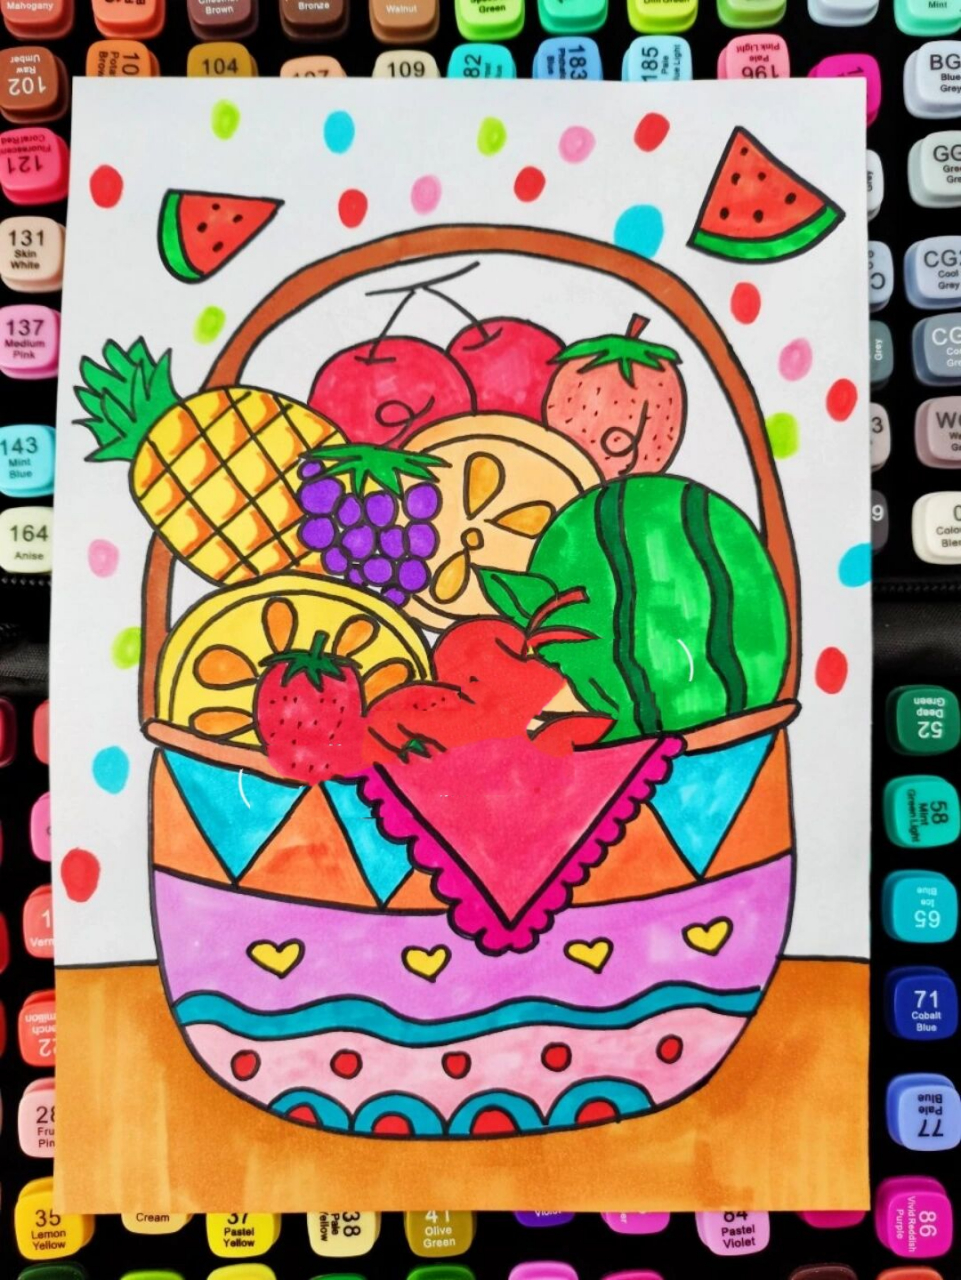 【创意画25】水果篮子儿童画/水果家族创意 目标知识:了解水果的造型